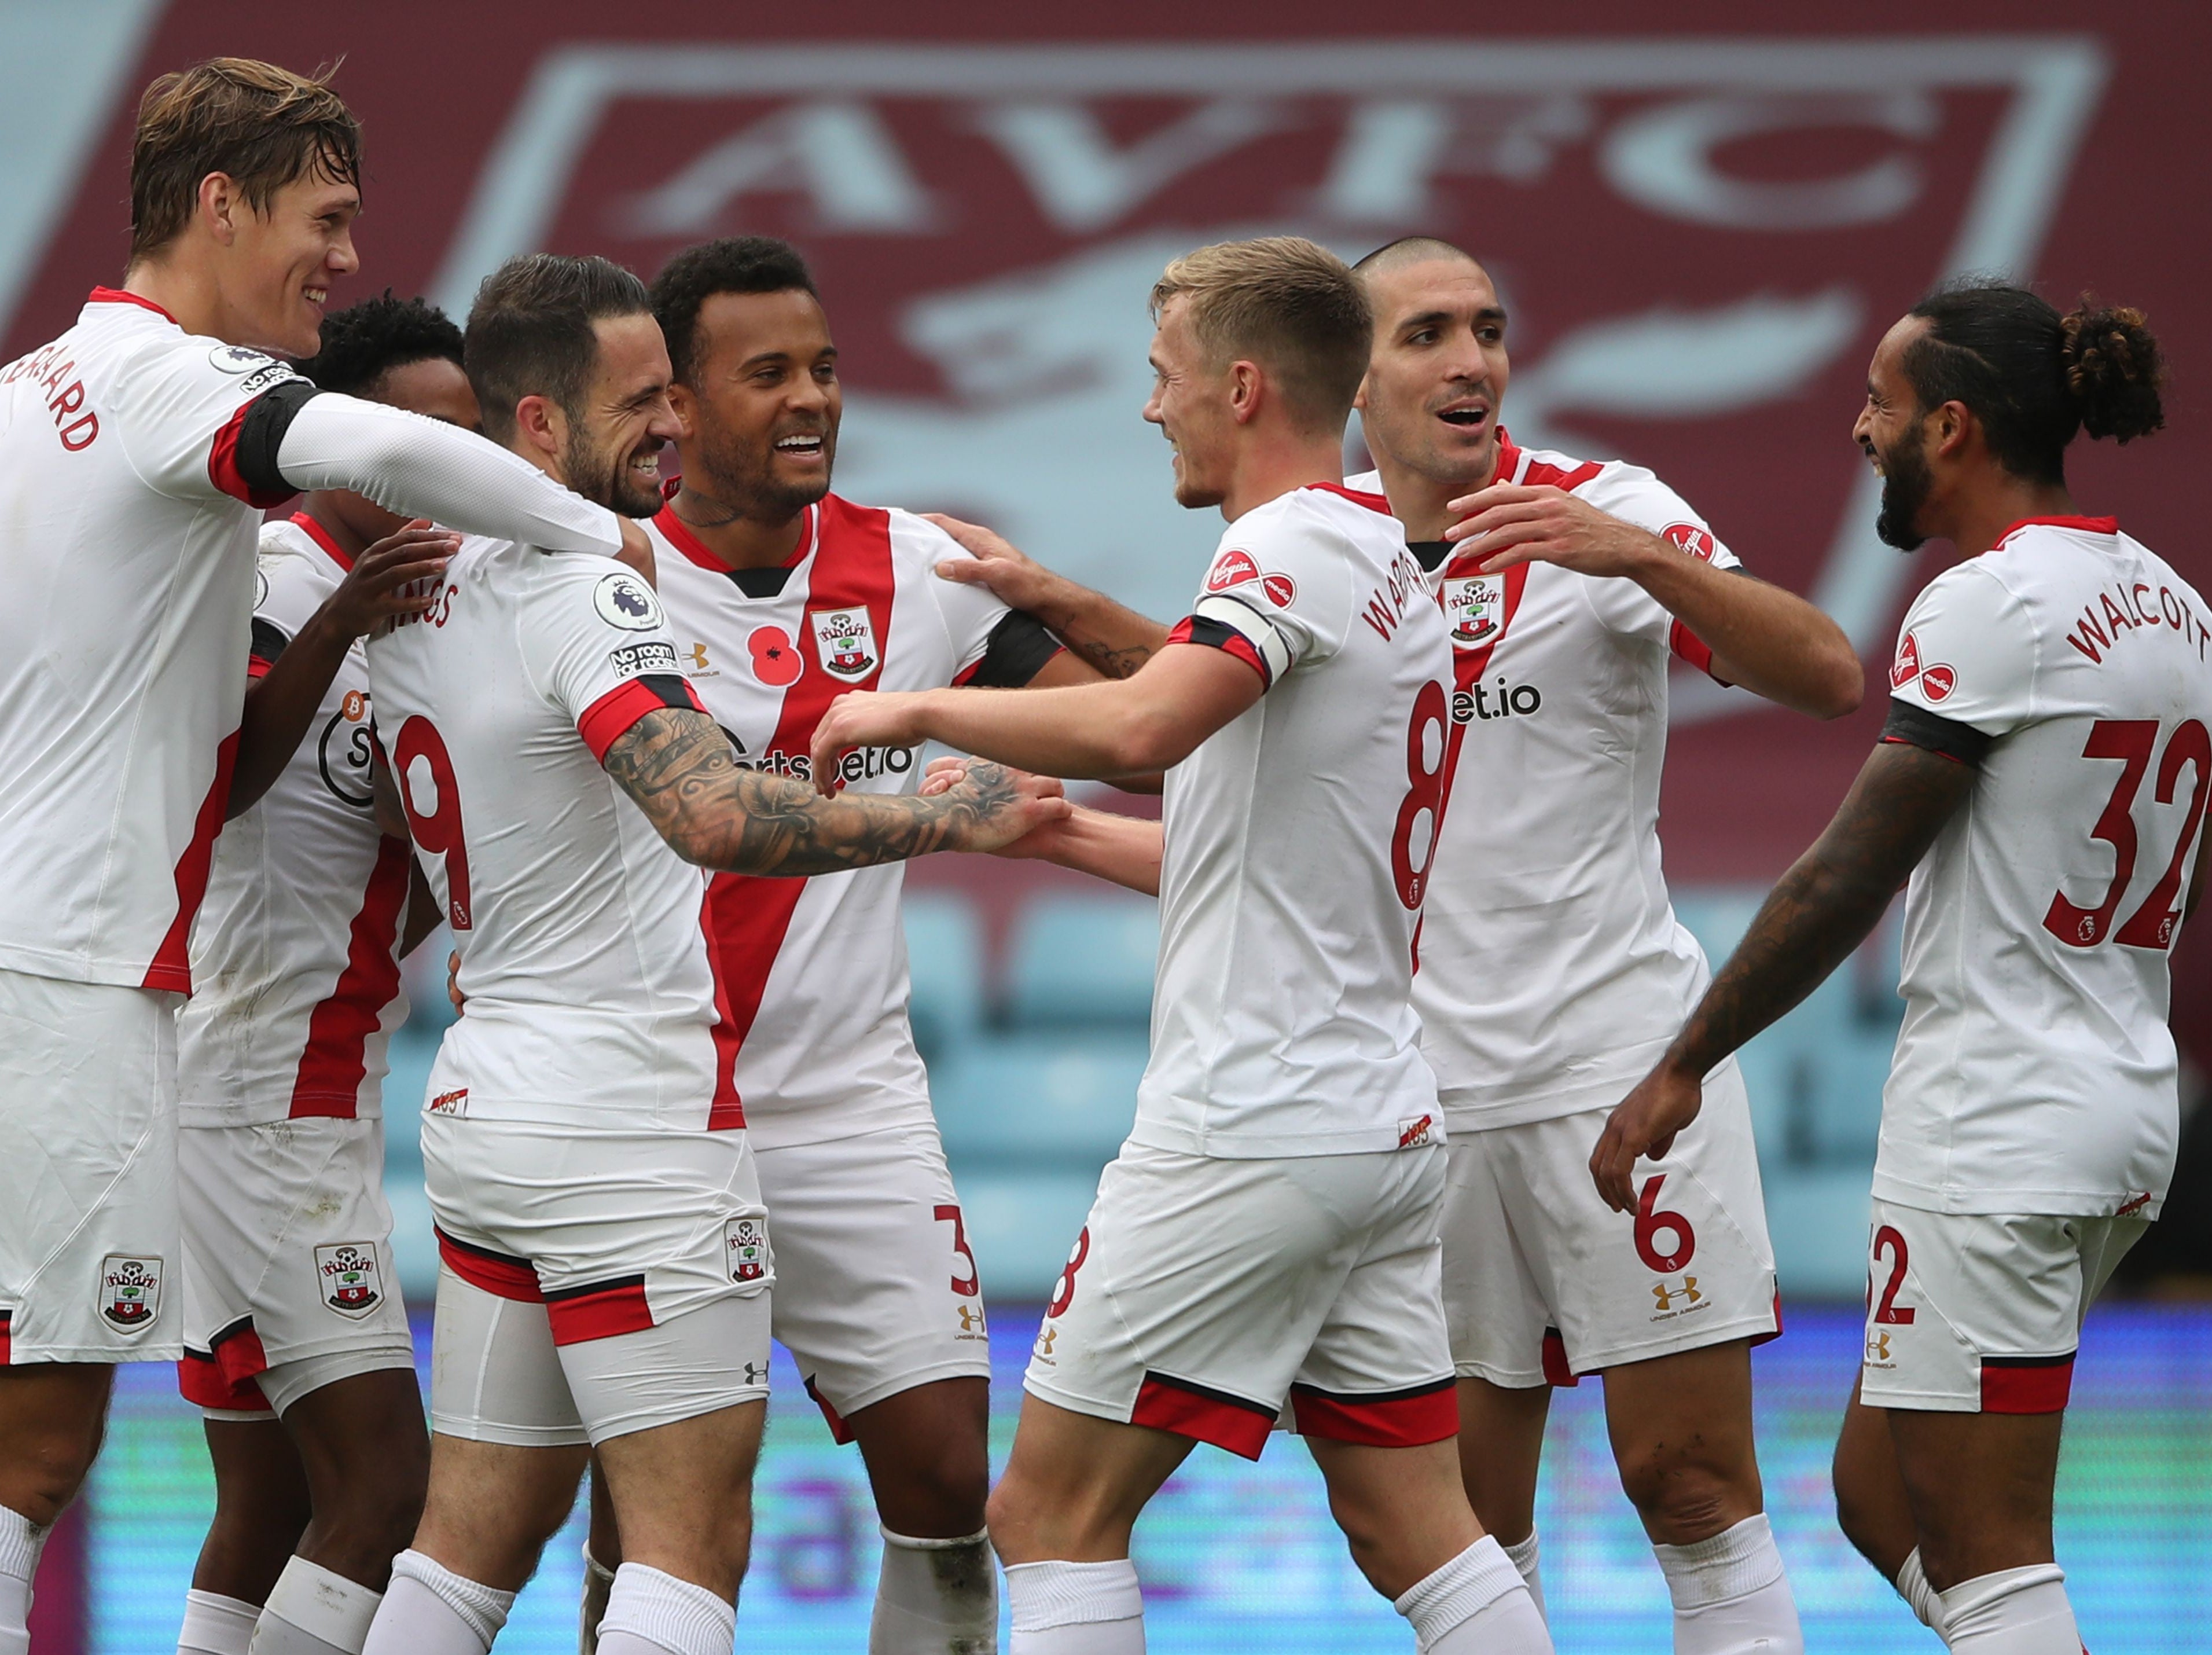 Southampton celebrate their goal